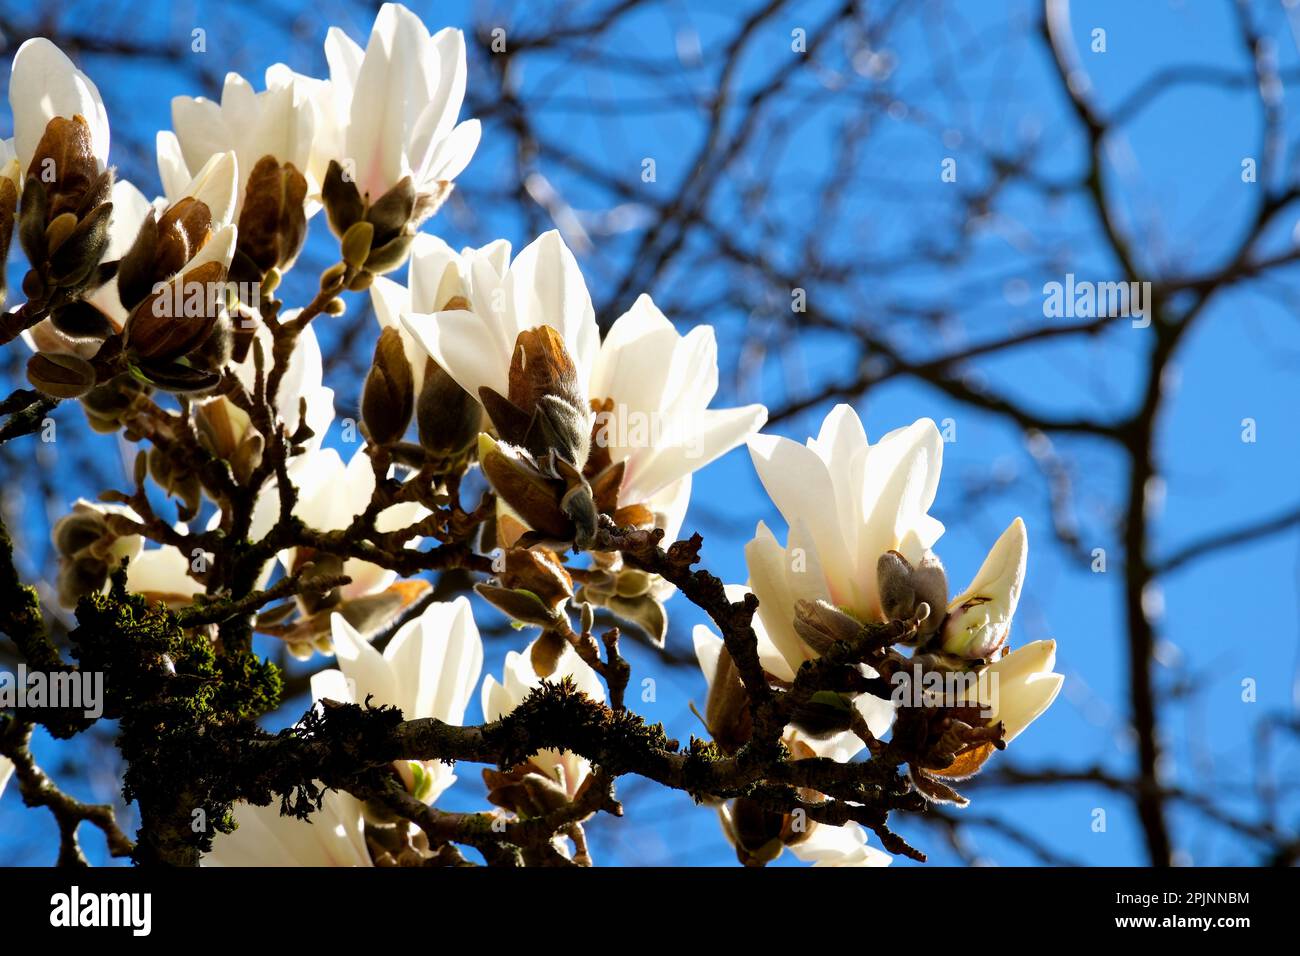 Bianco cinese o piatto magnolia fiori, grandi fiori magnolia sullo sfondo di rami appassiti di un altro albero di vita confronto di morte di giovani e anziani Foto Stock